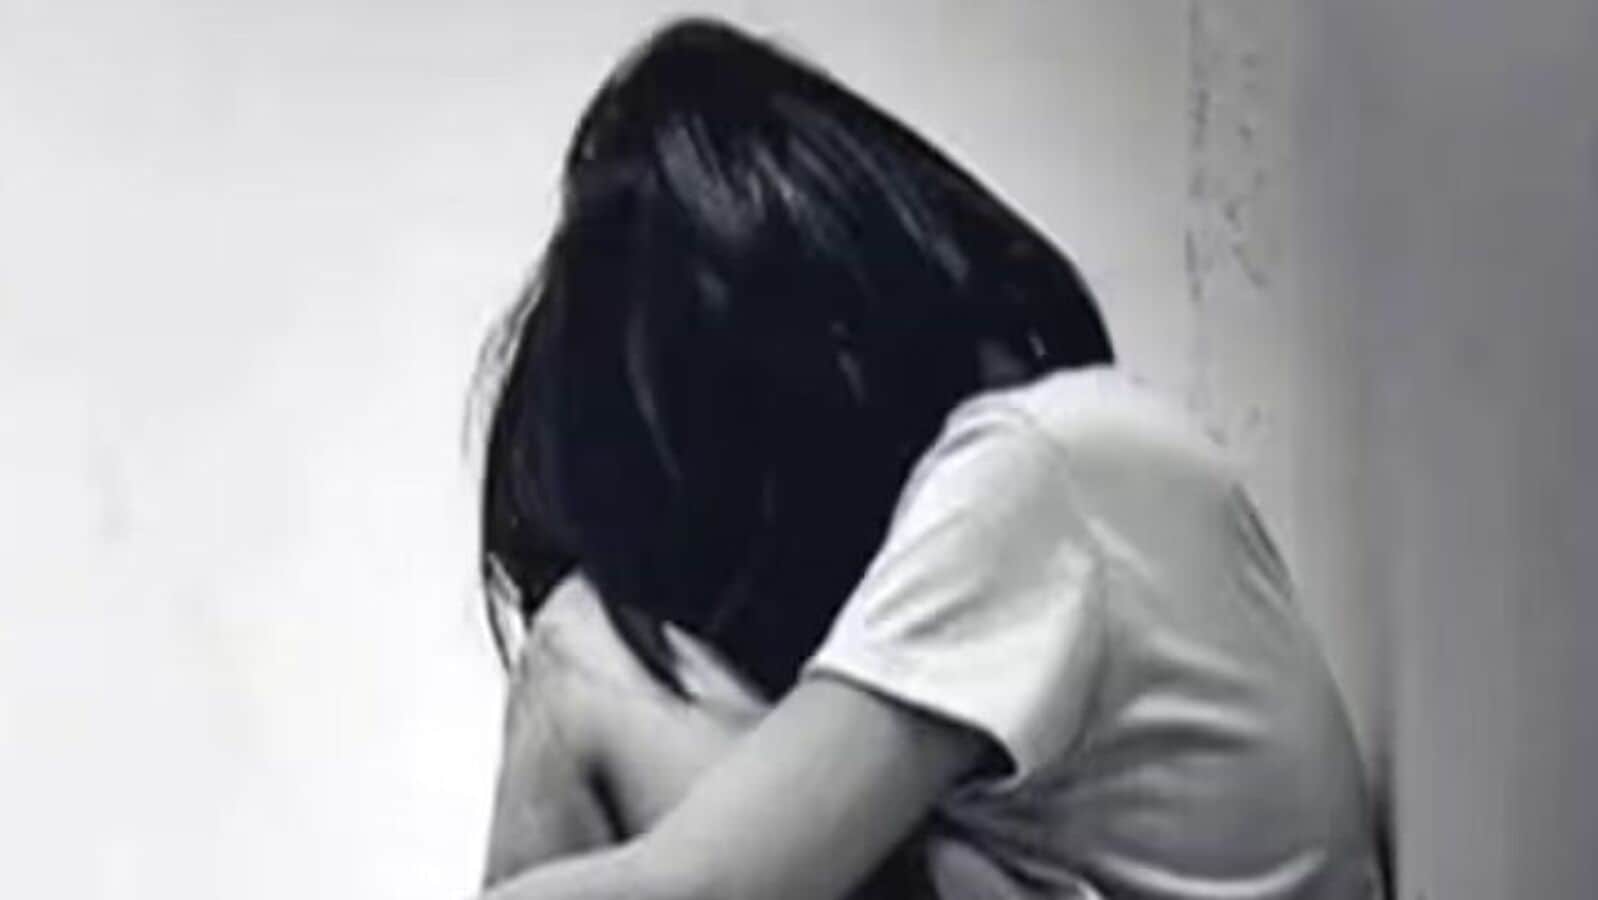 Pune wagholi : तुला पिक्चर दाखवतो टॉयलेटमध्ये चल म्हणत १० वर्षांच्या मुलावर शाळेत लैंगिक अत्याचार